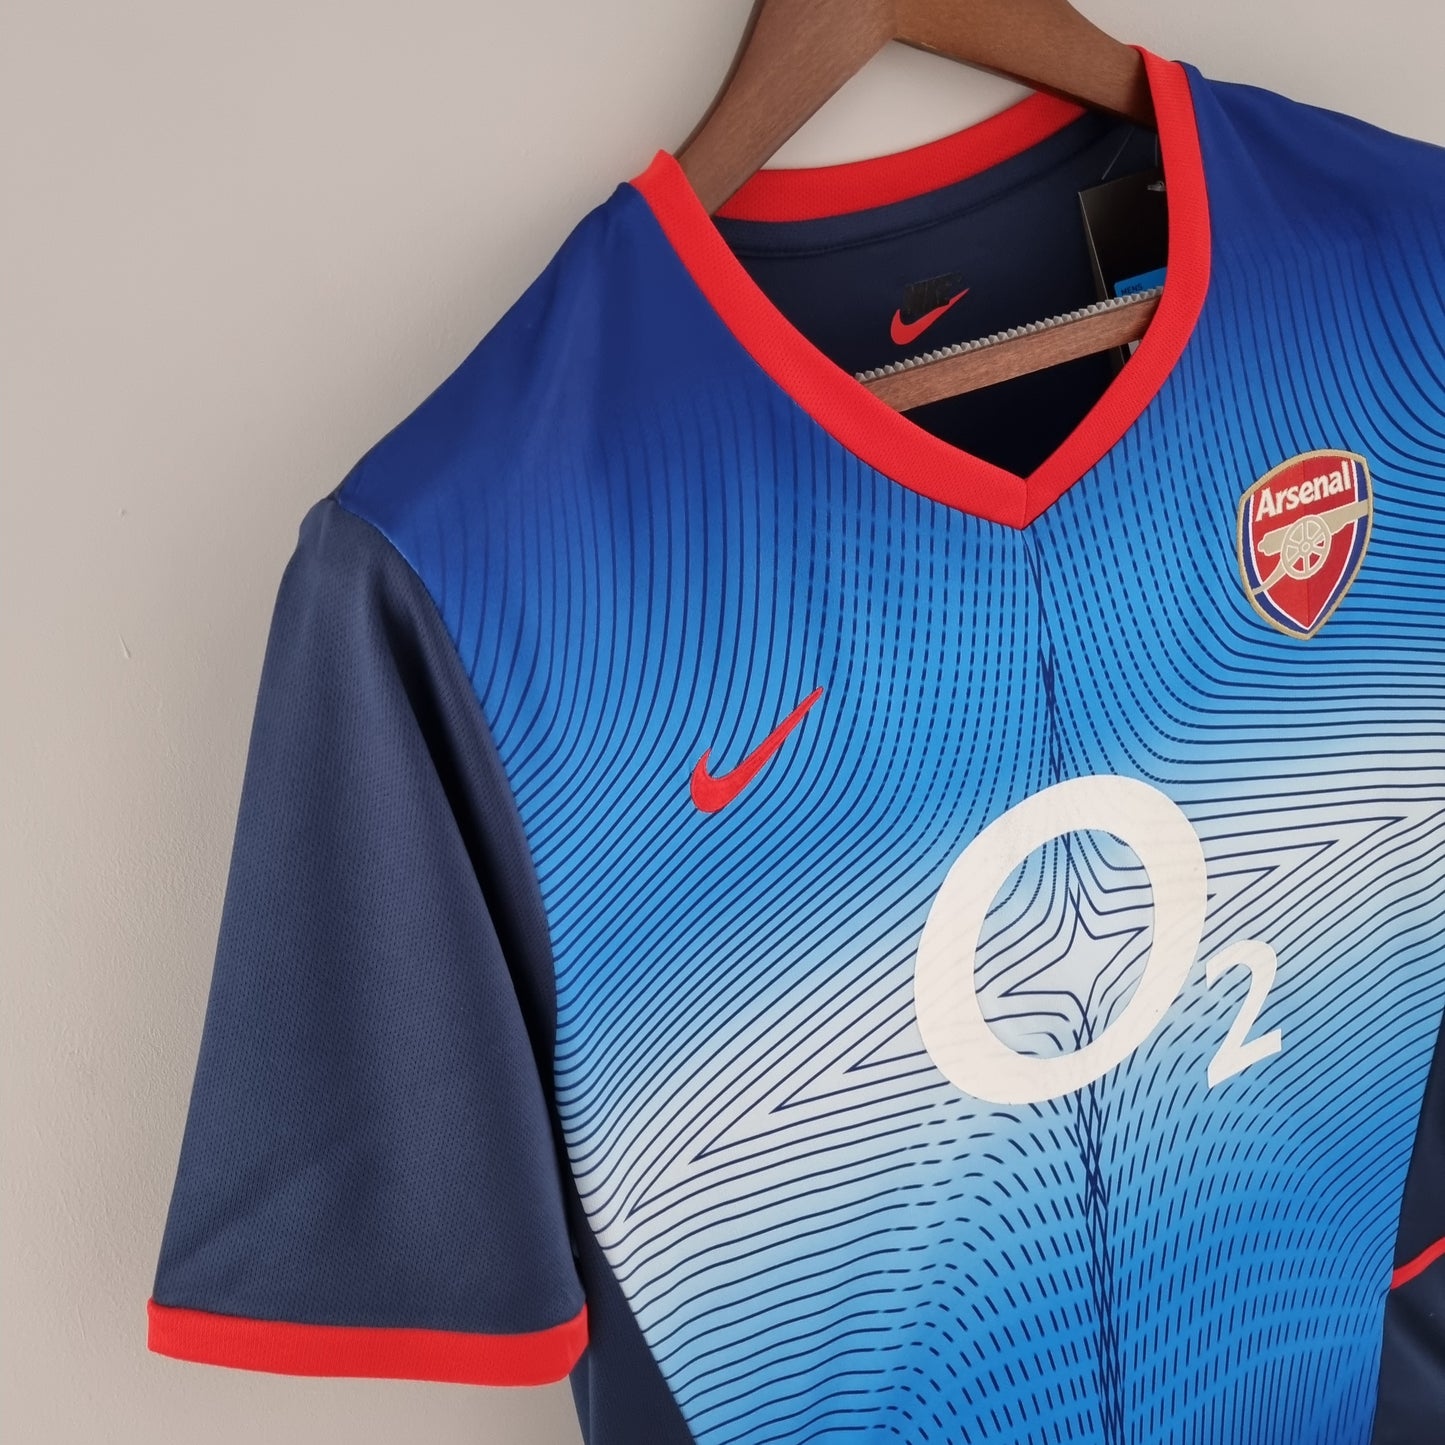 Retro Arsenal 02/04 Away Kit